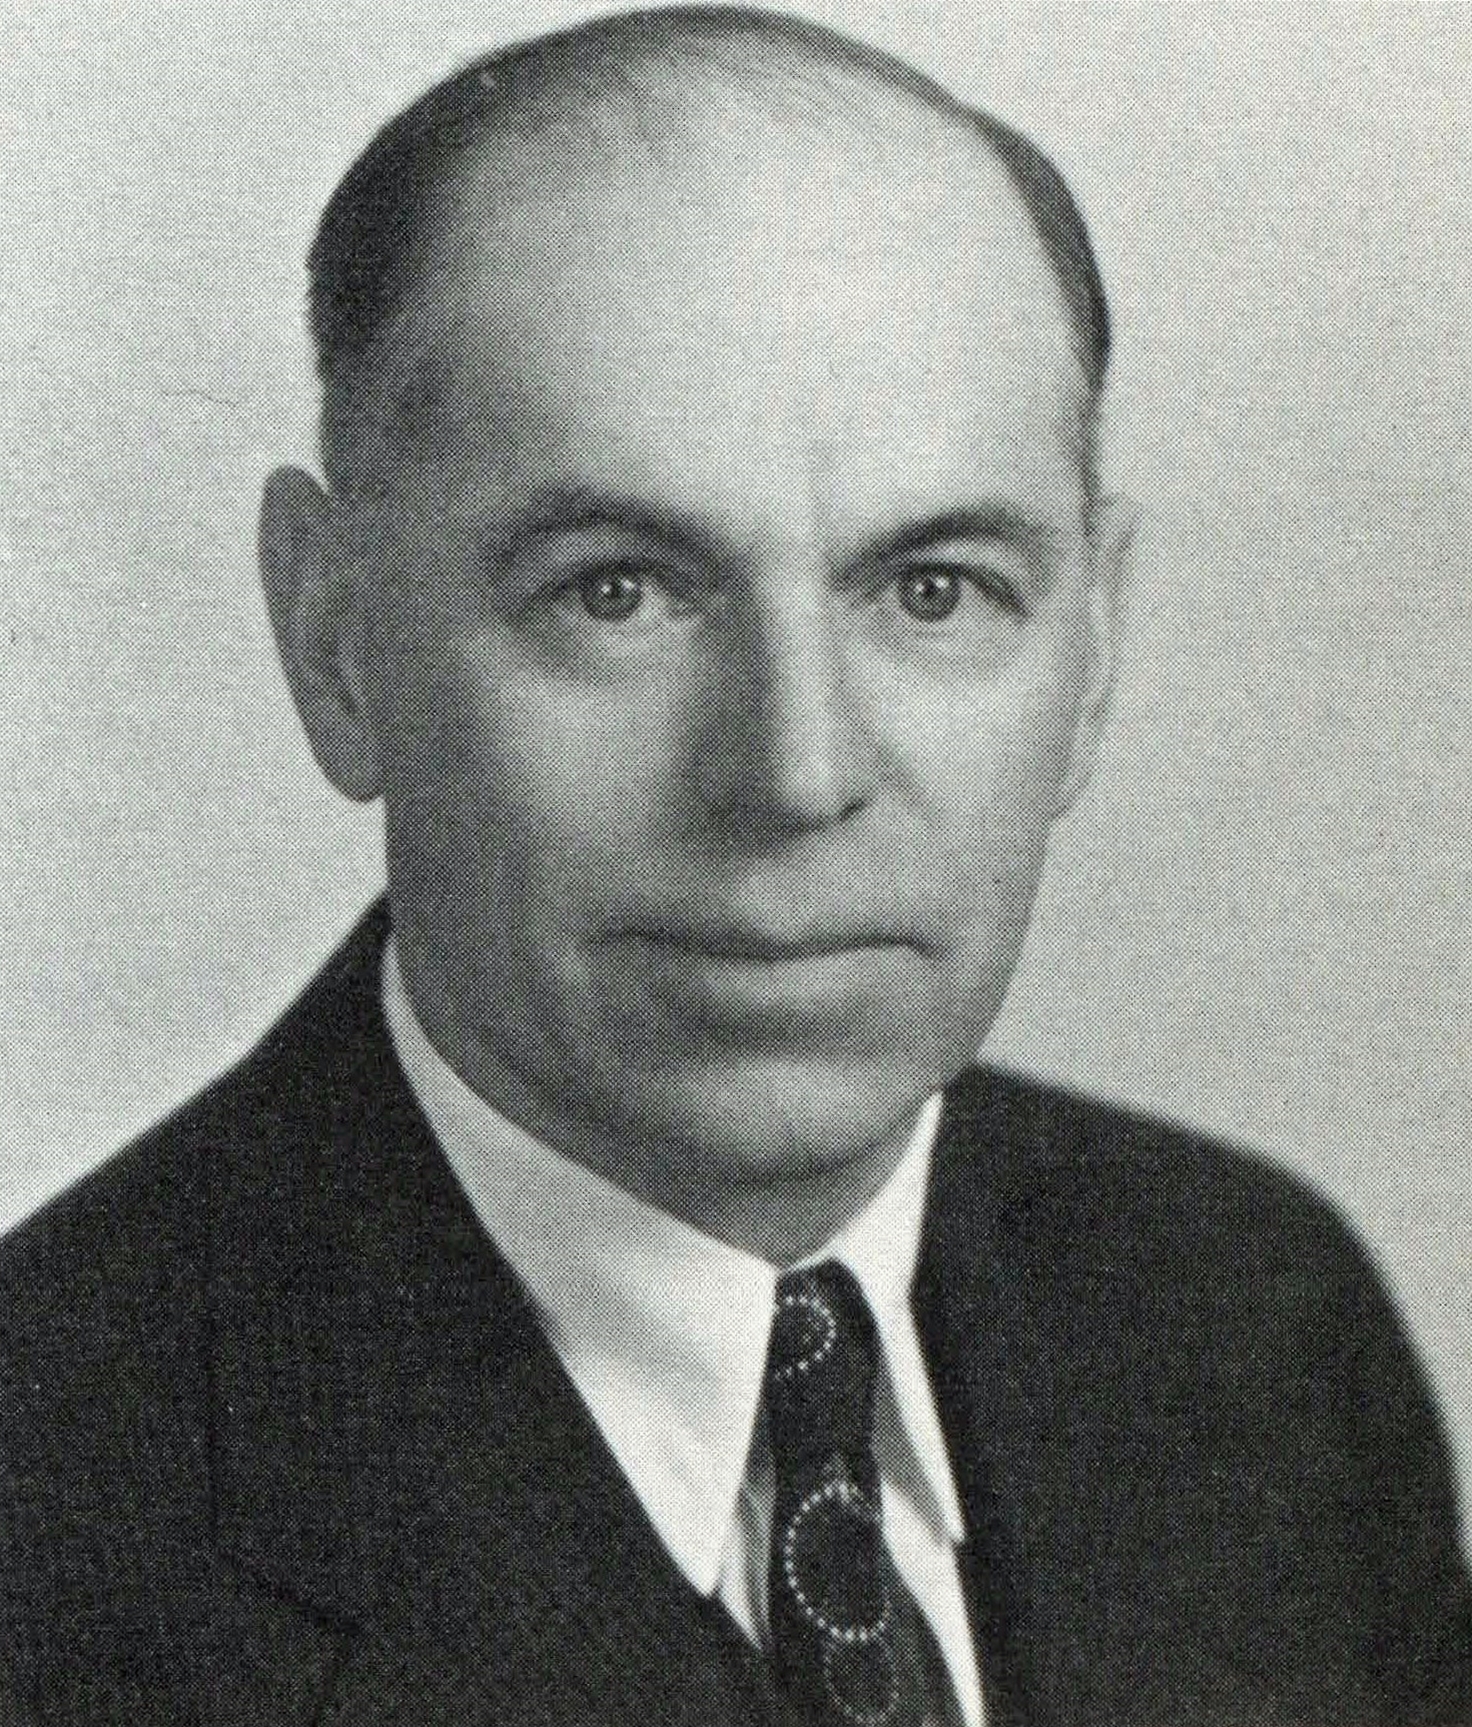 Roger C. Smith